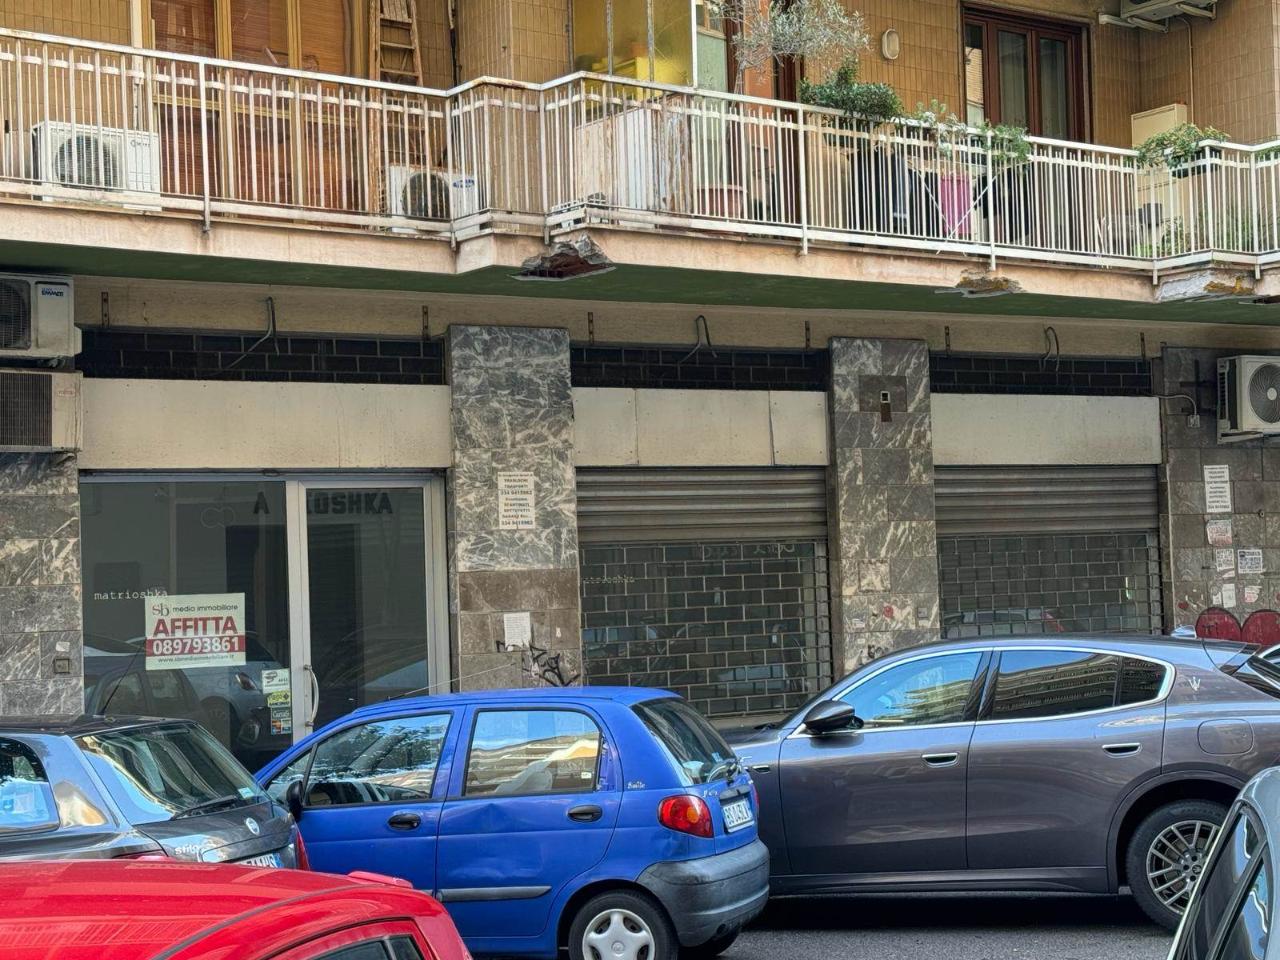 Negozio in affitto a Salerno